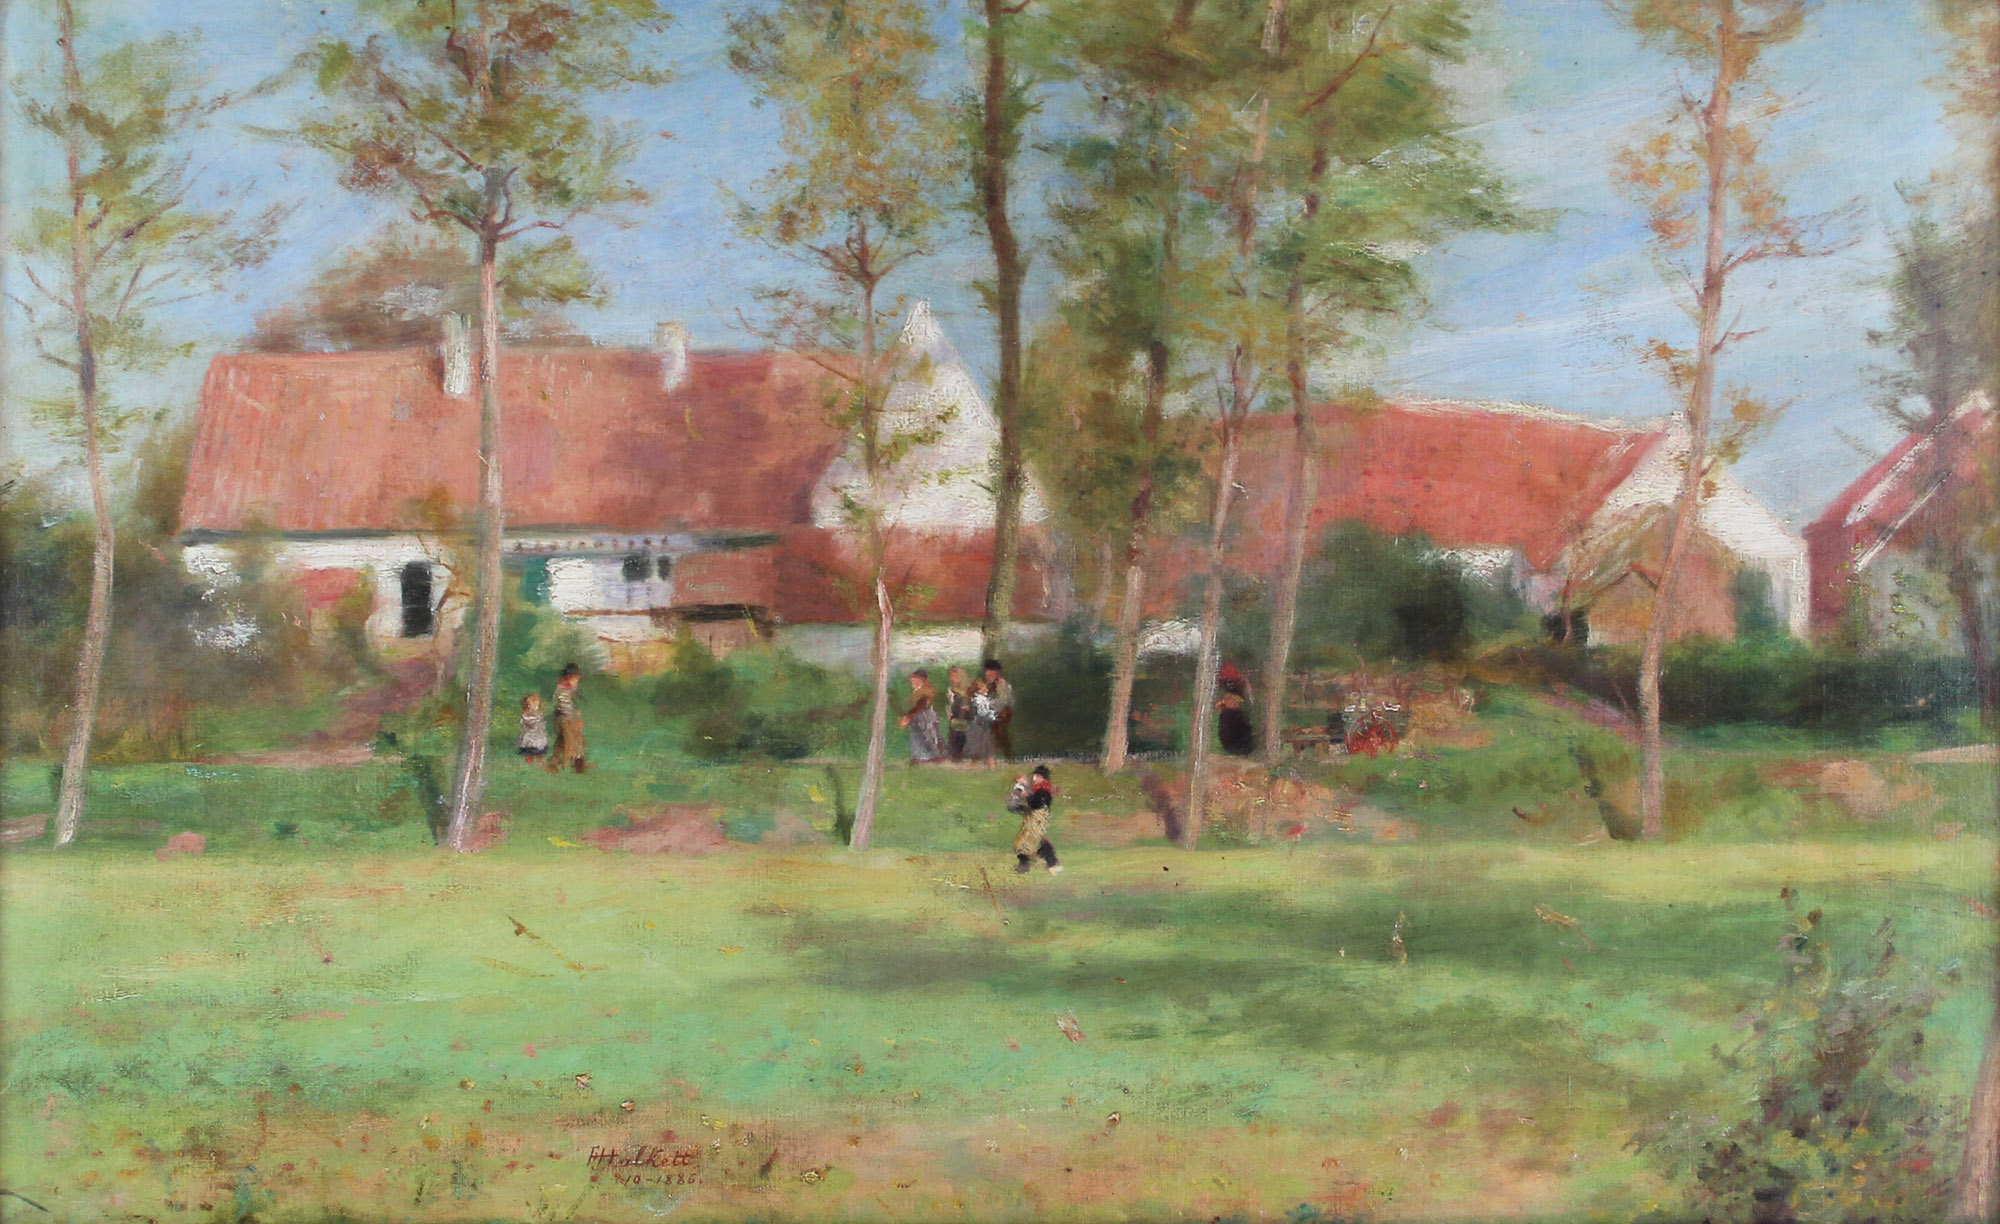 tableau Du soleil d'octobre Halkett Franois Joseph paysage,scne rurale impressionnisme huile toile 19e sicle